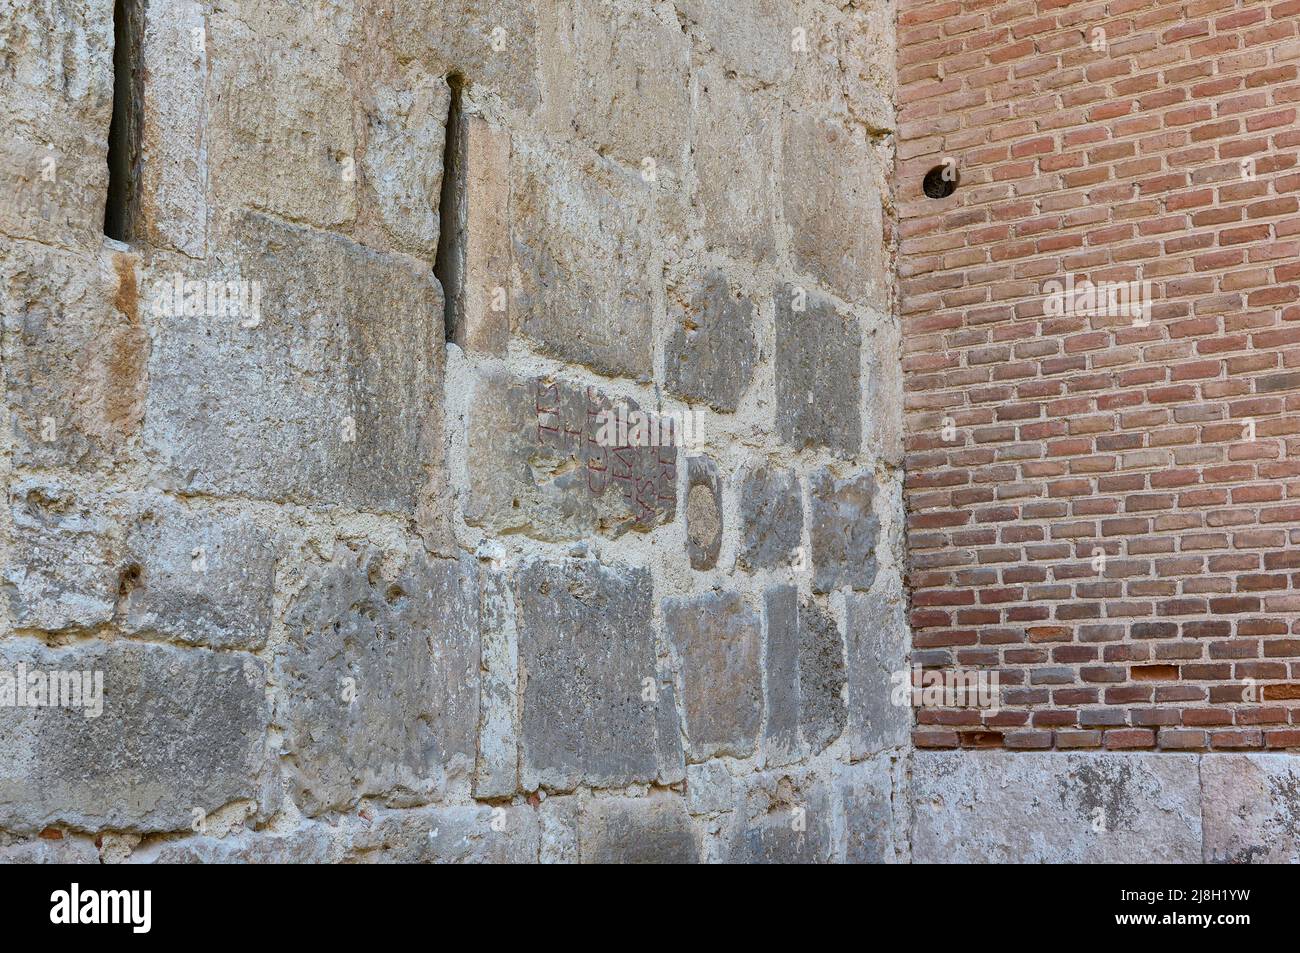 Detail des Baumaterials aus Complutum, wiederverwendet im Tenorio-Turm. Erzbischöflicher Palast von Alcala de Henares, Region Madrid, Spanien. Stockfoto